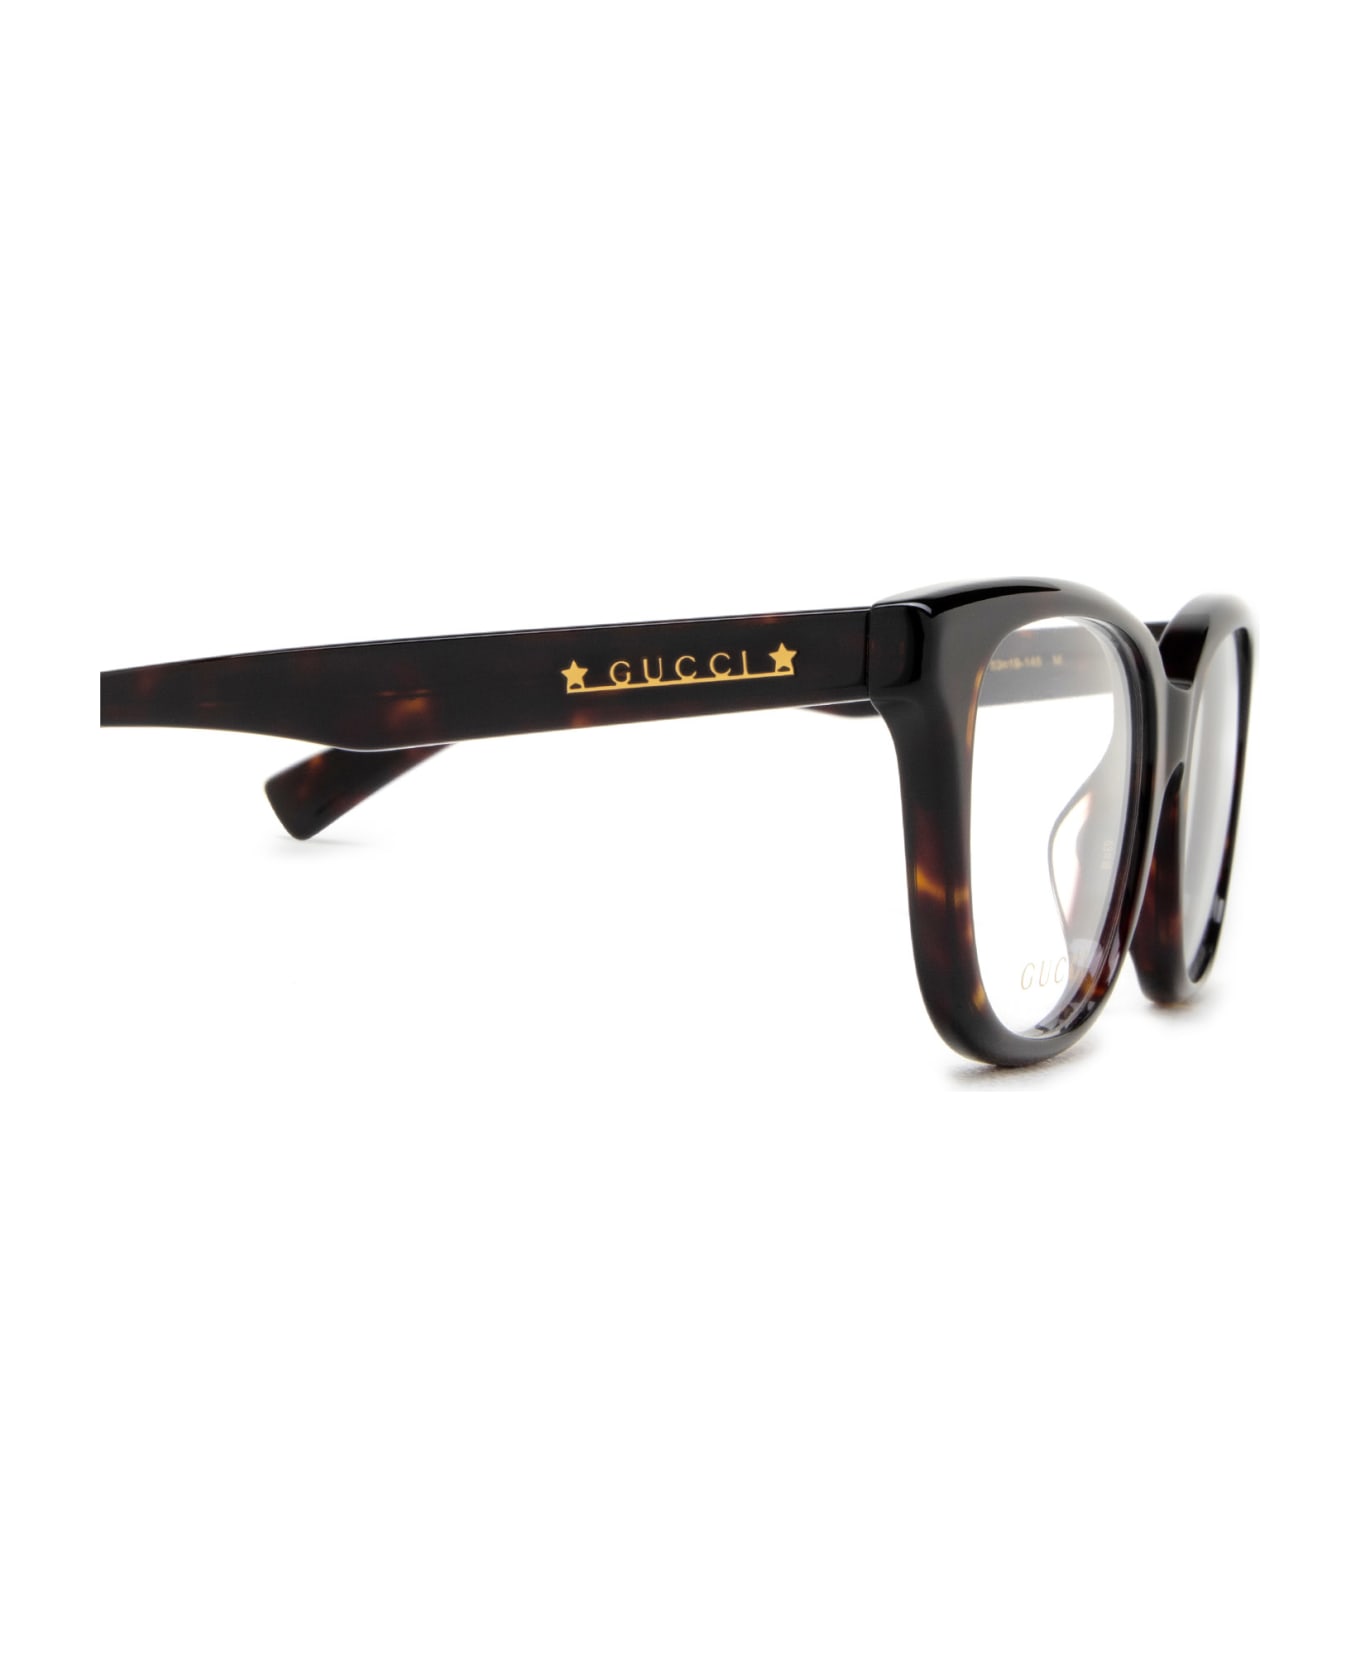 Gucci Eyewear Gg1173oa Havana Glasses - Havana アイウェア